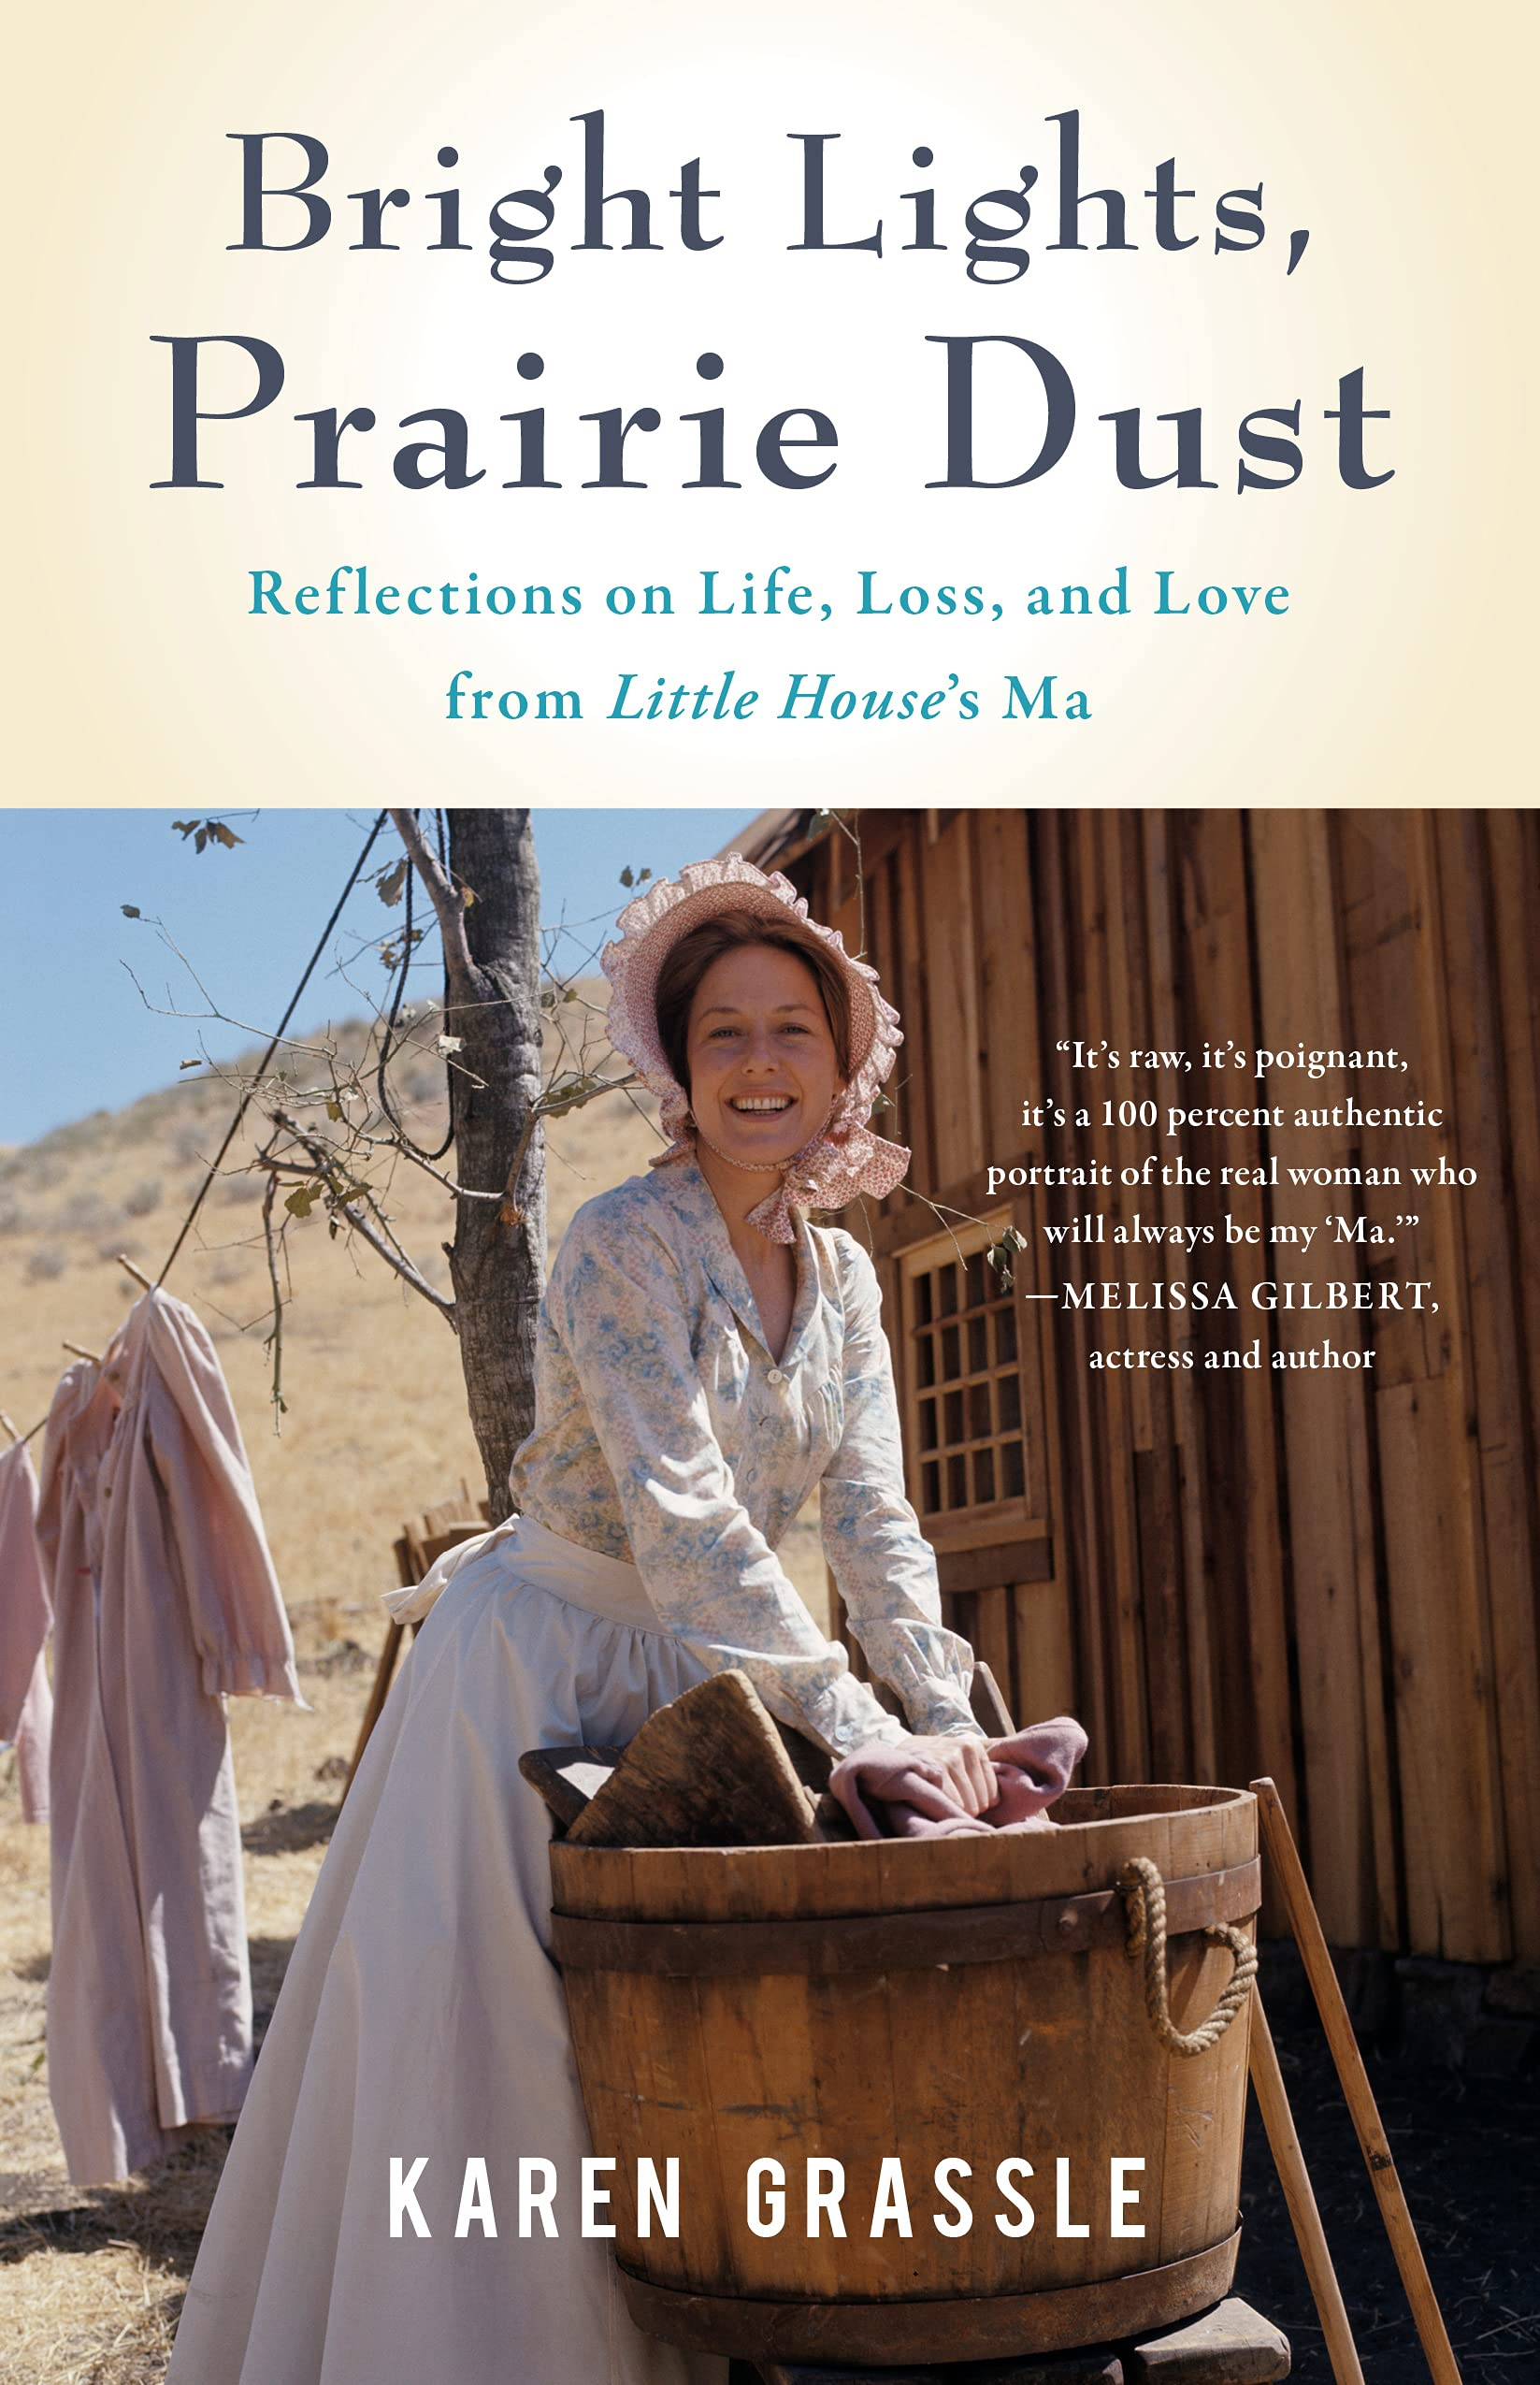 La portada de la autobiografía de Karen Grassle, caracterizada como Caroline Ingalls, con un prólogo de Mellisa Gilbert donde la define como "su querida 'Ma por siempre"